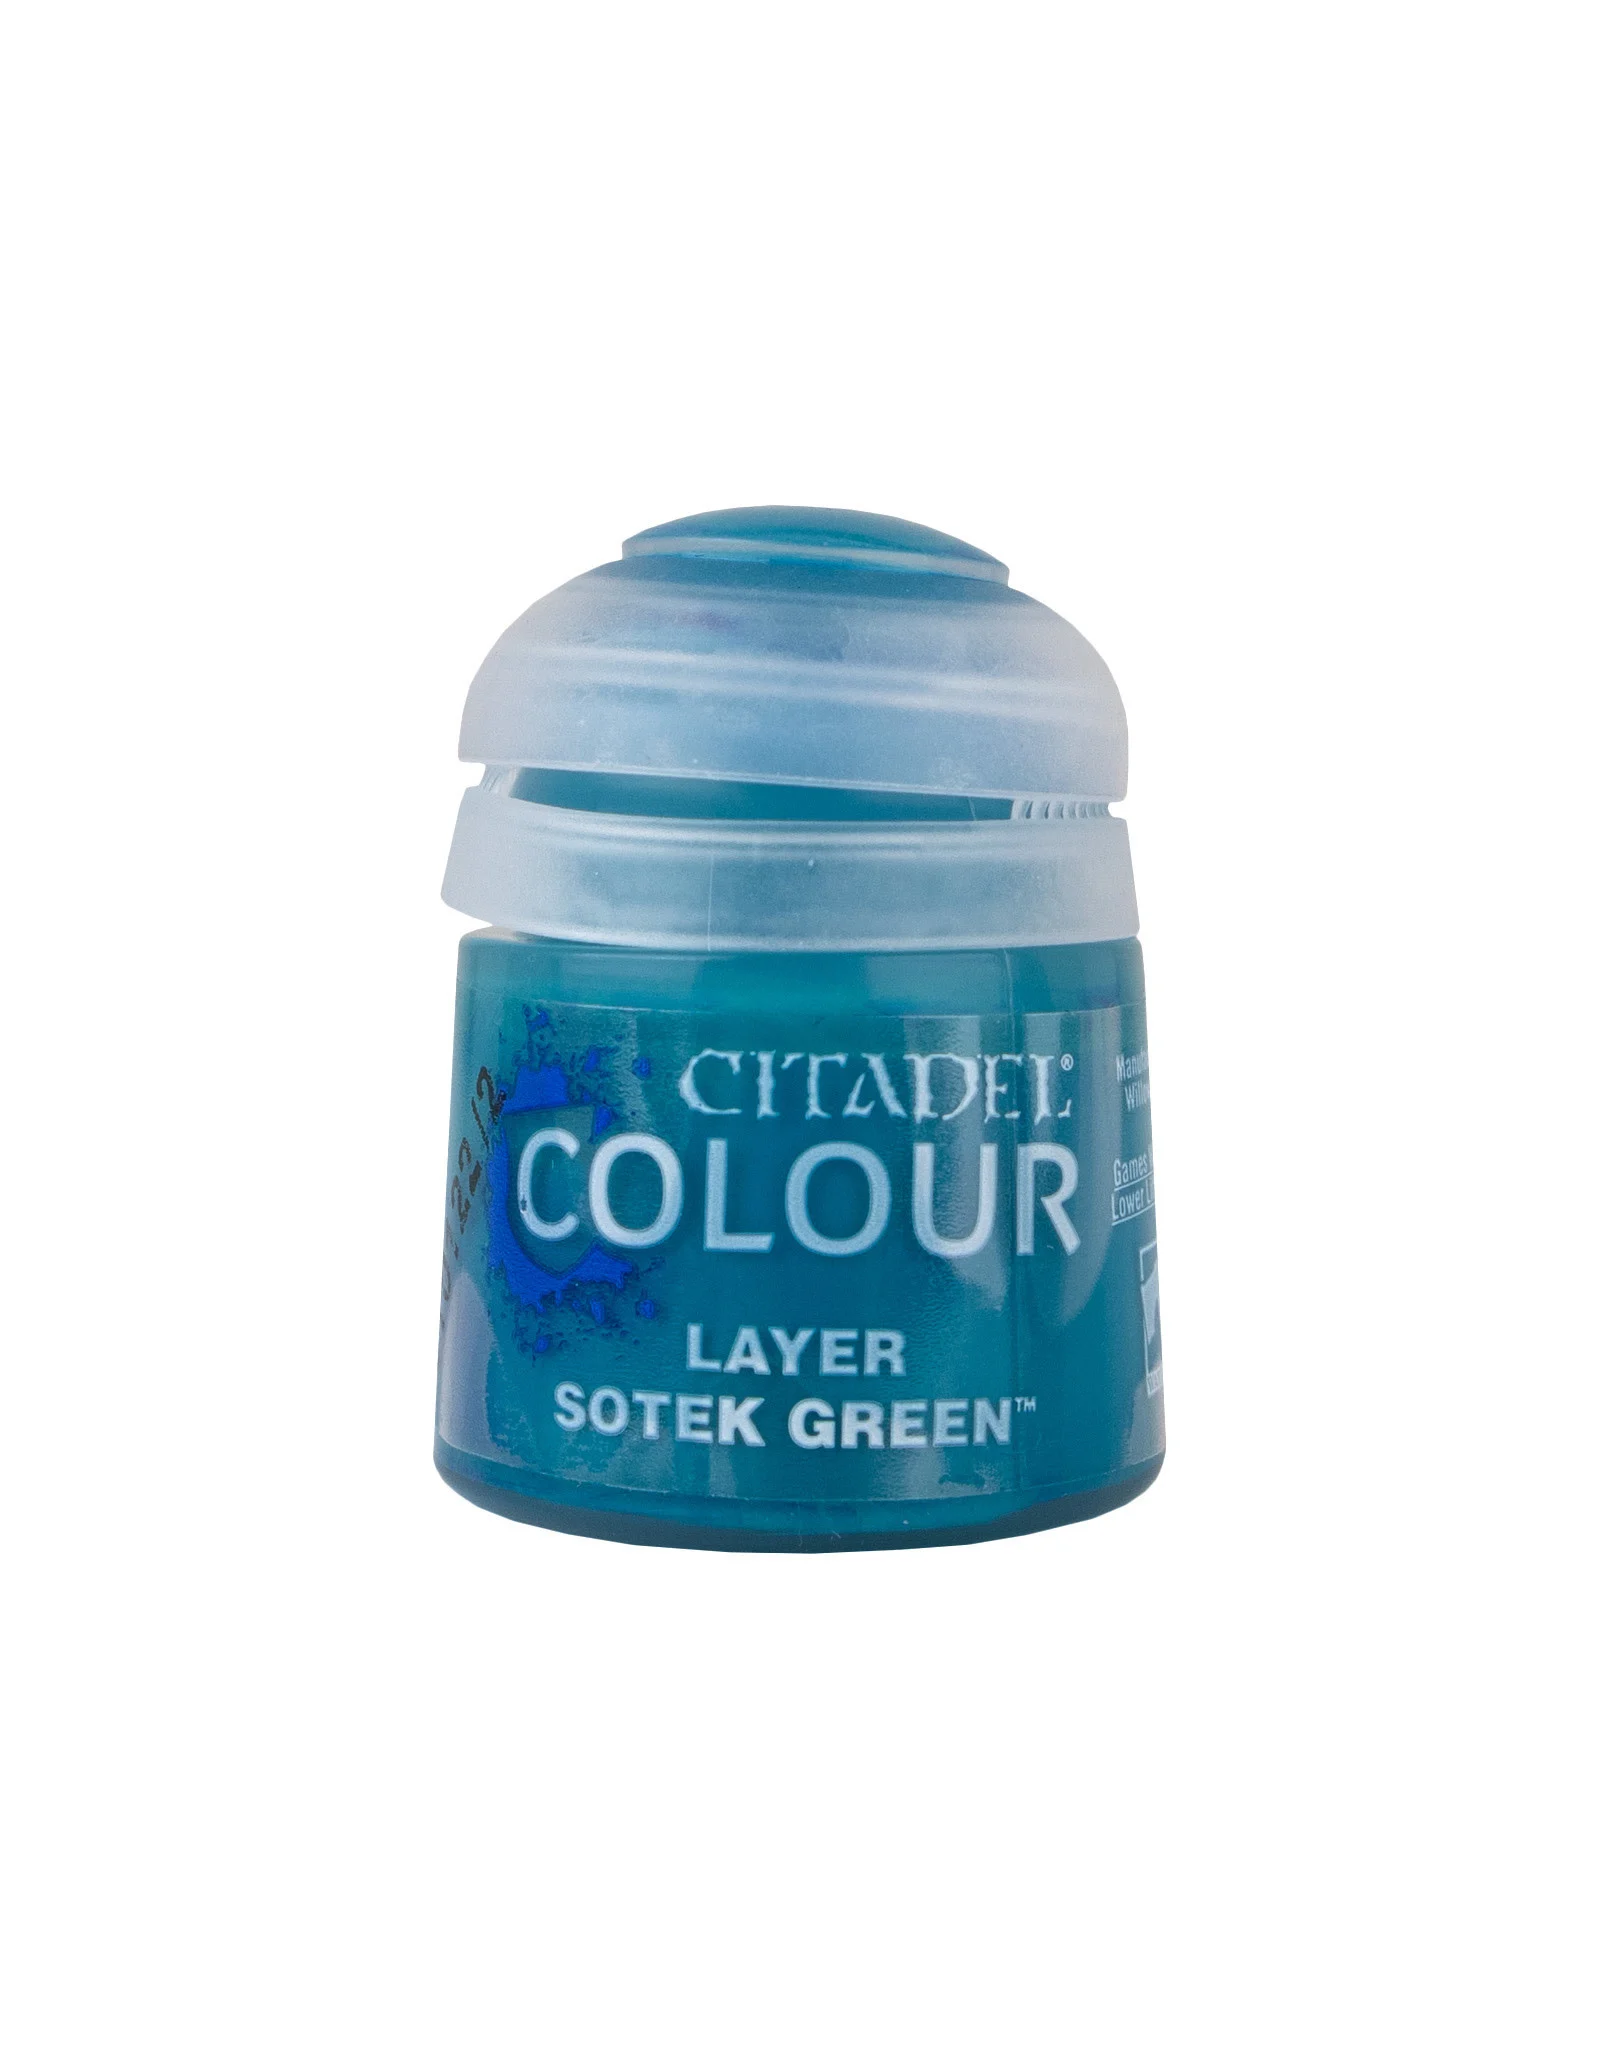 Citadel Colour – Layer – Sotek Green